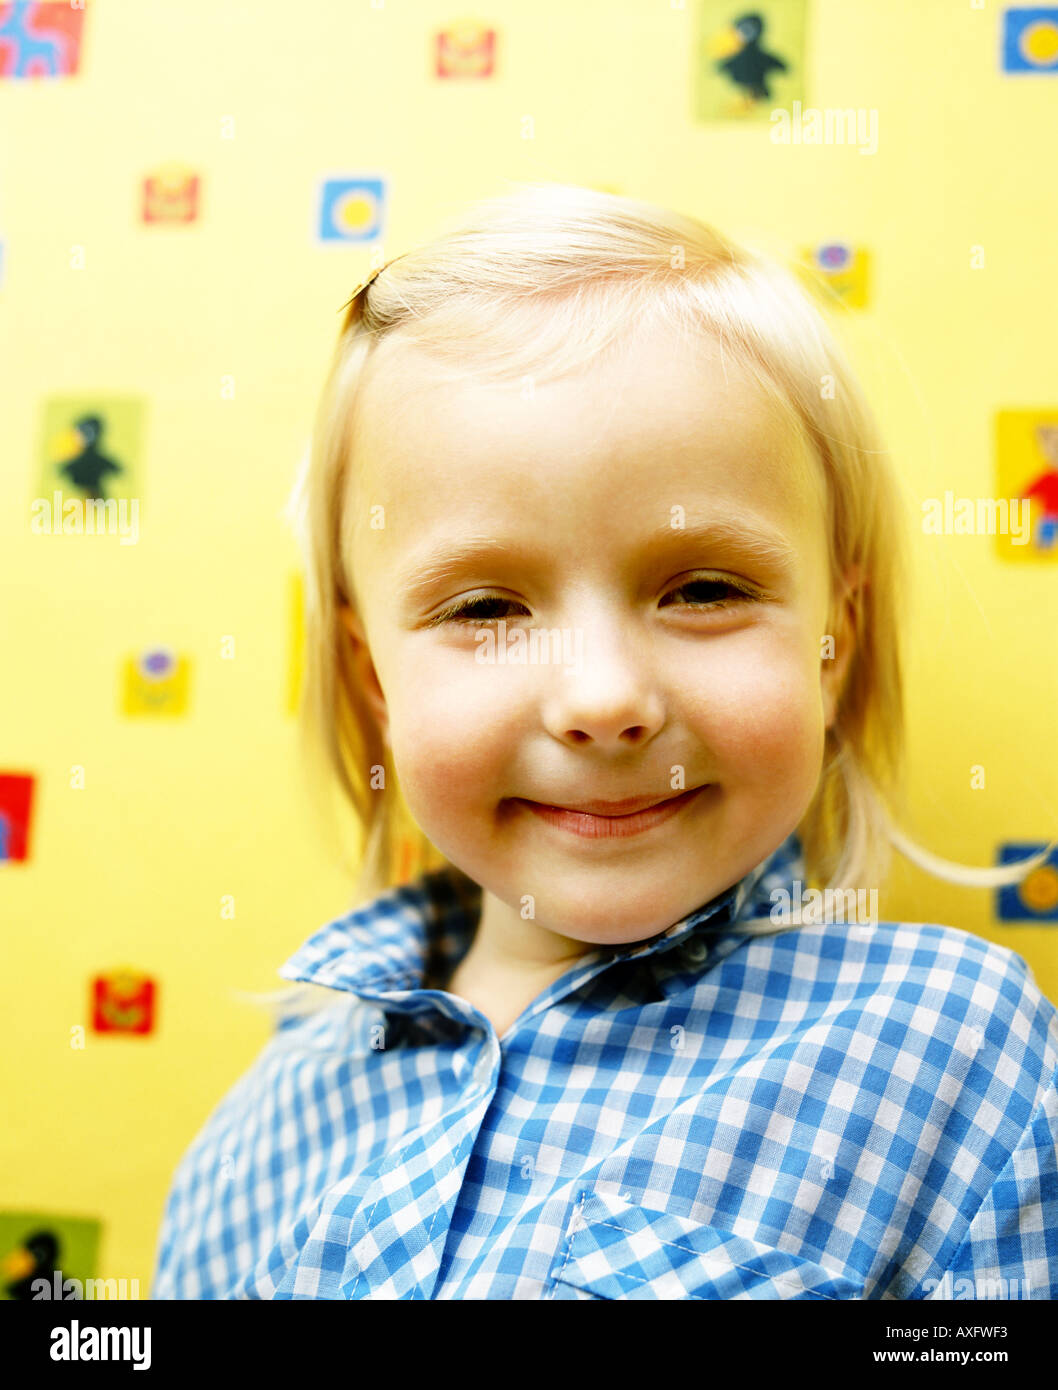 Piscine télévision prix mur de papier design crée close up girl enfant 5 10 pince à cheveux blond sourire souriant shirt portrait volets volet Banque D'Images